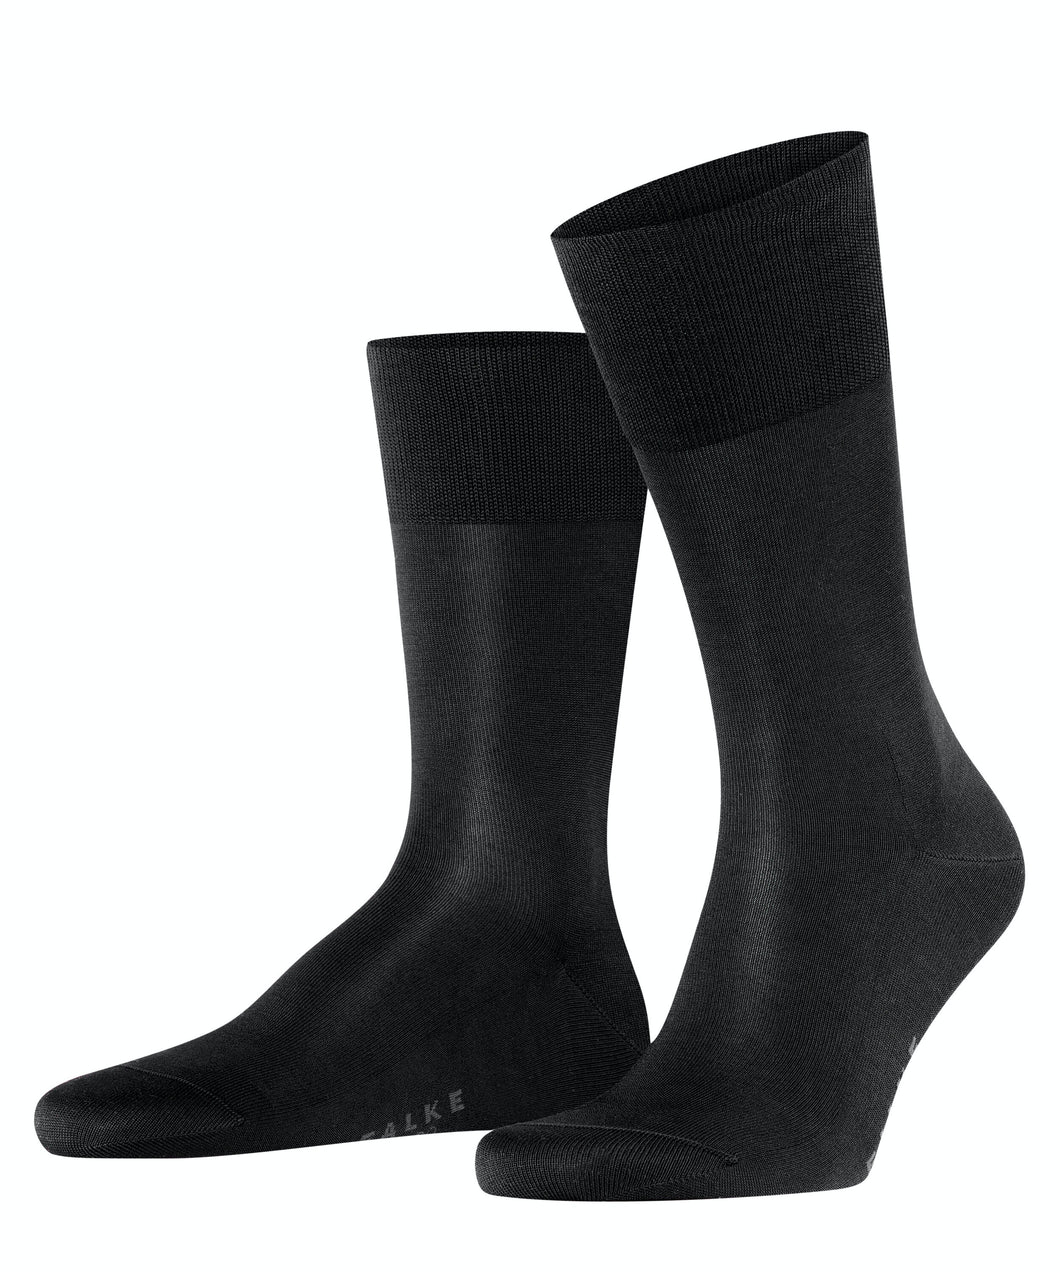 FALKE Tiago Socks in Black 14792-3000